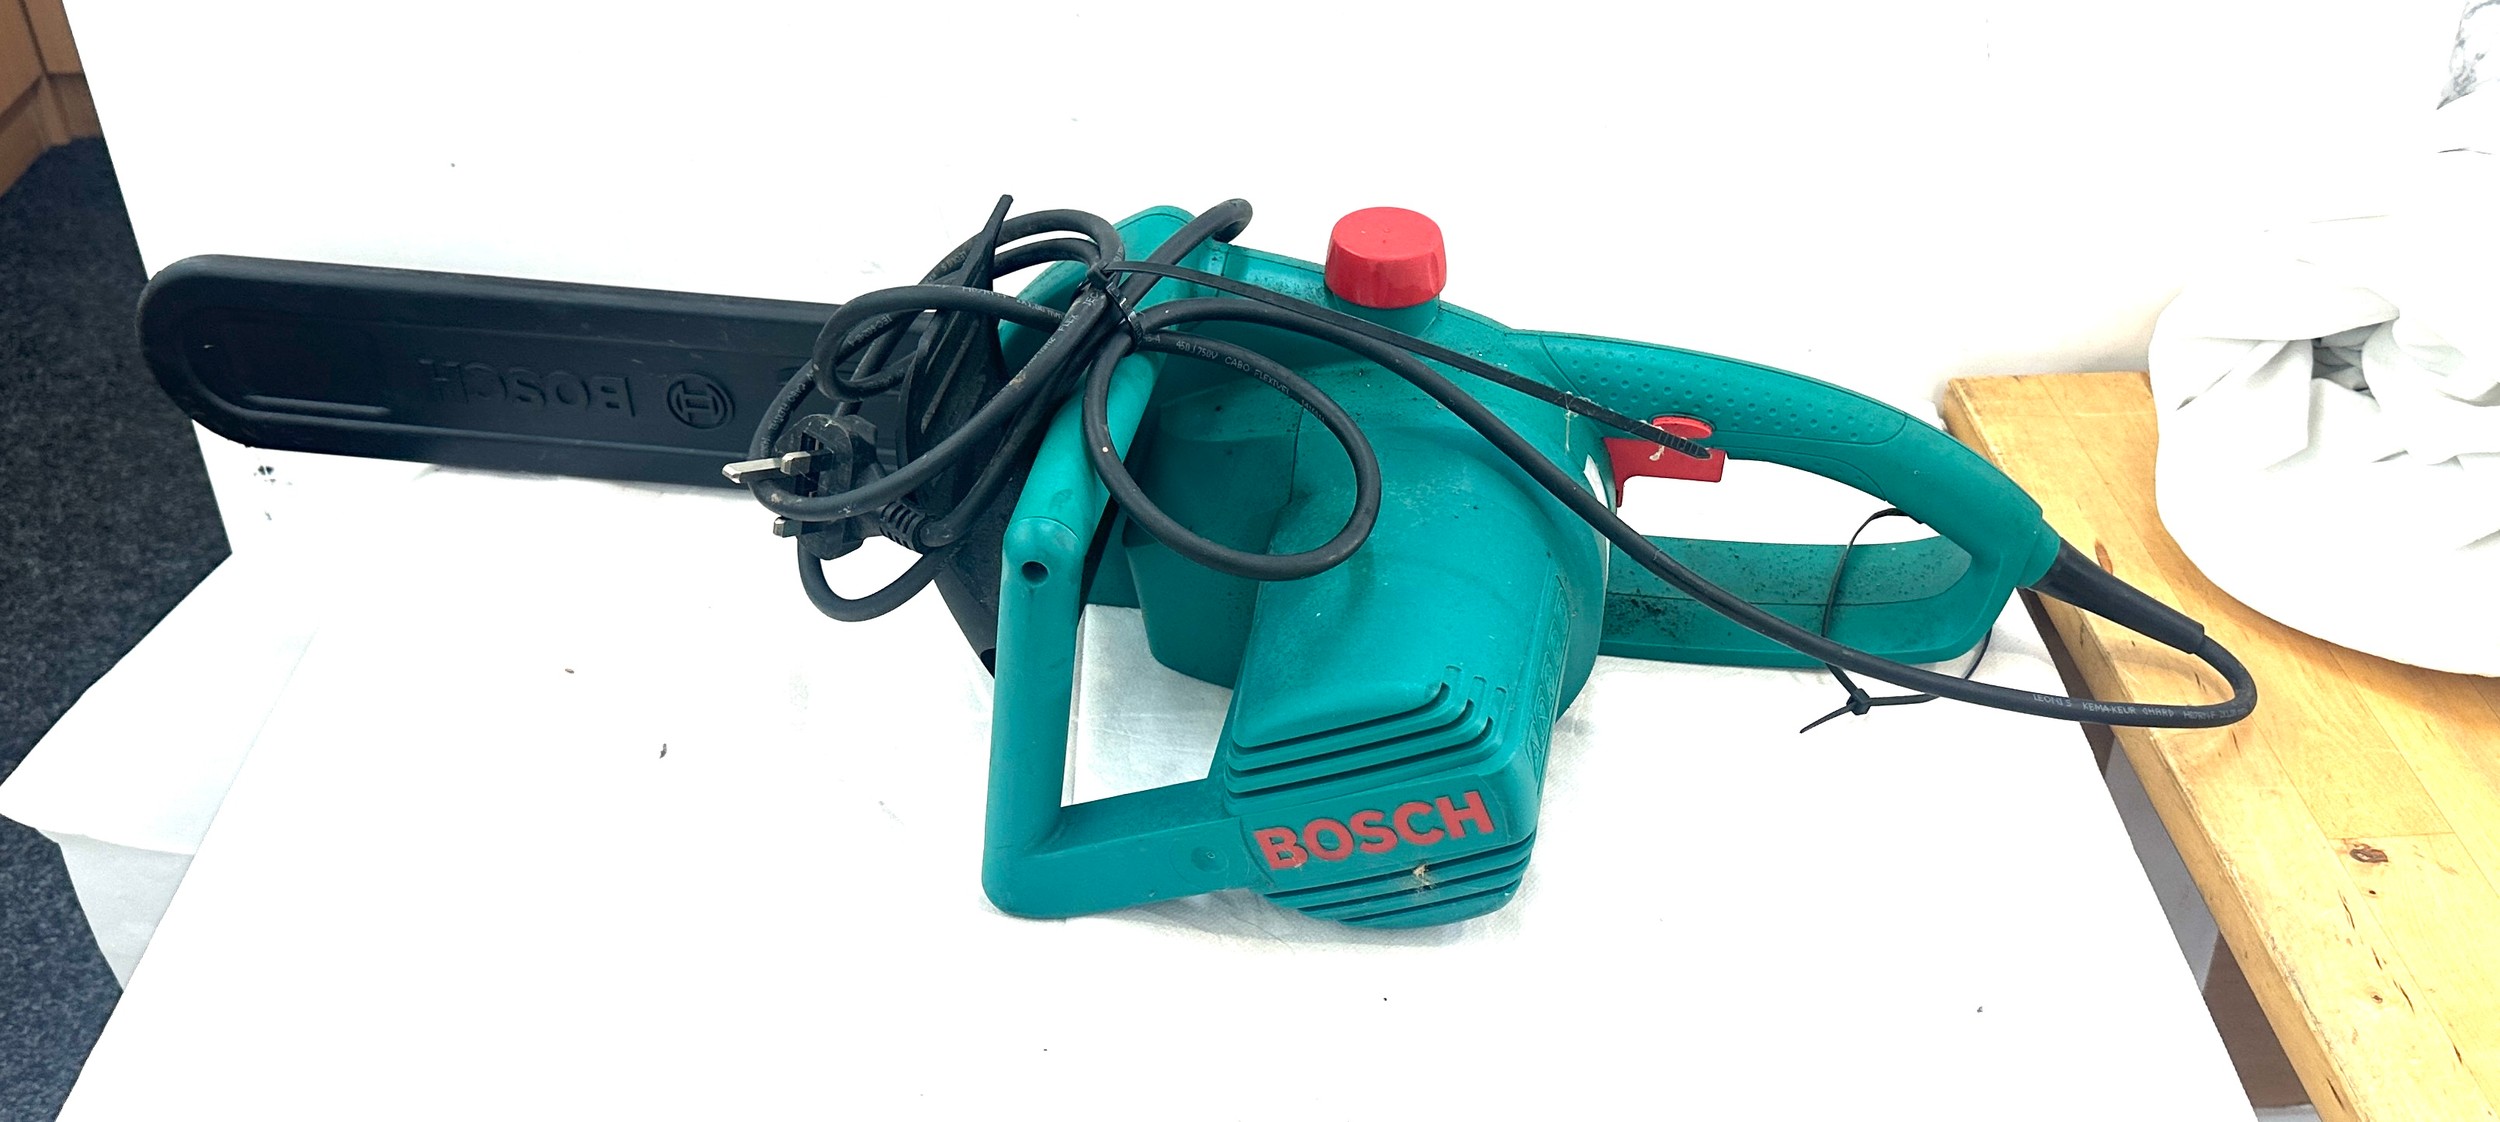 Bosch 8ke 35s chain saw, untested